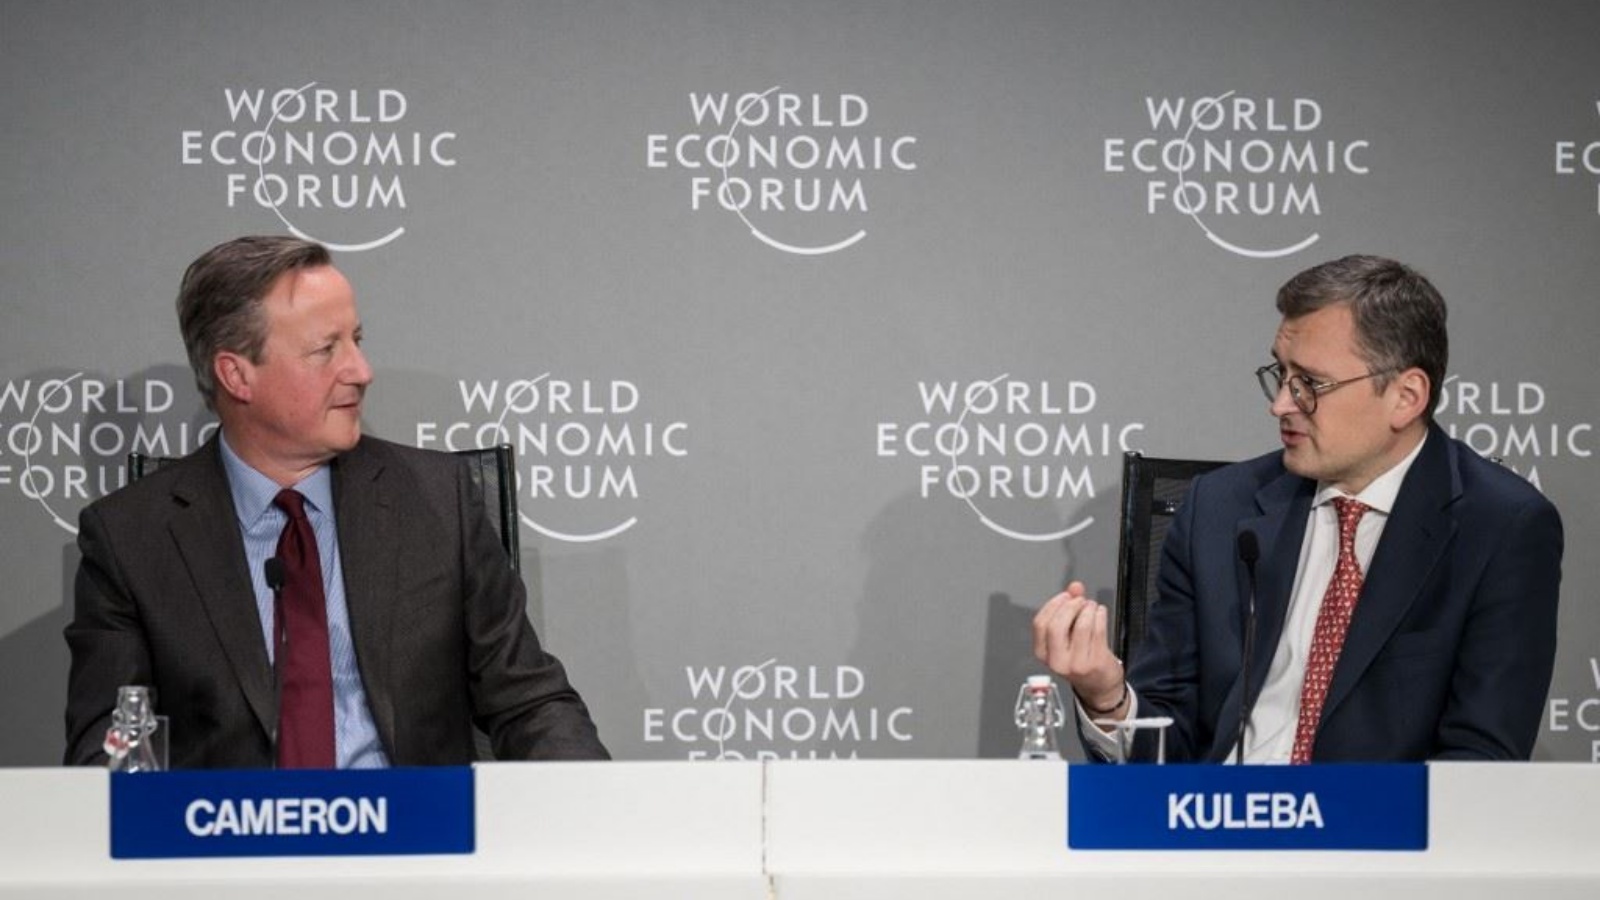 كوليبا (الى اليمين) يتحدث الى نظيره البريطاني ديفيد كاميرون خلال جلسة في المنتدى الاقتصادي العالمي في دافوس 17 كانون الثني (يناير) 2024